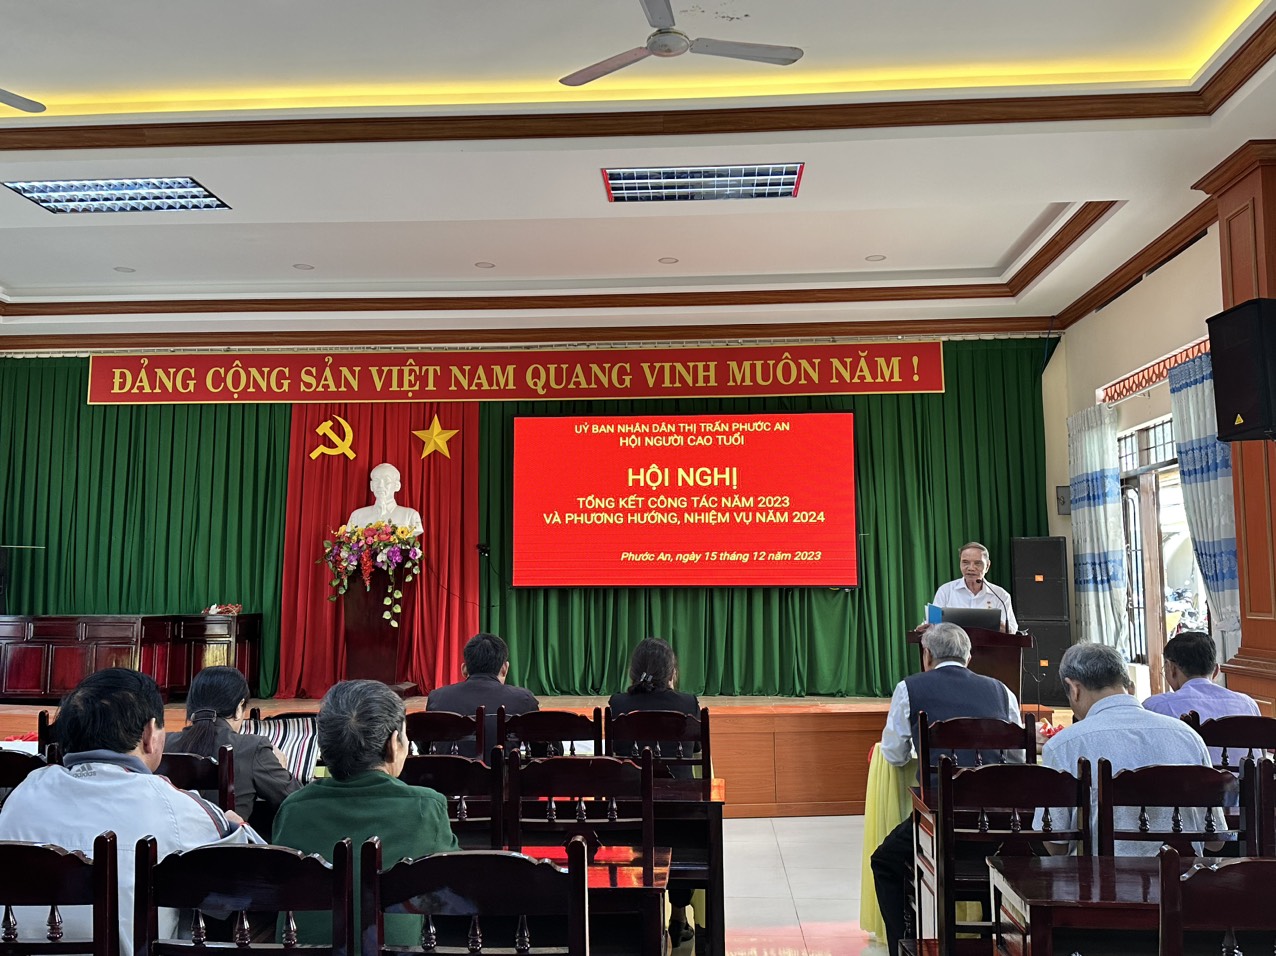 Hội Người cao tuổi thị trấn Phước An tổ chức hội nghị tổng kết công tác hội năm 2023 và phương hướng, nhiệm vụ năm 2024